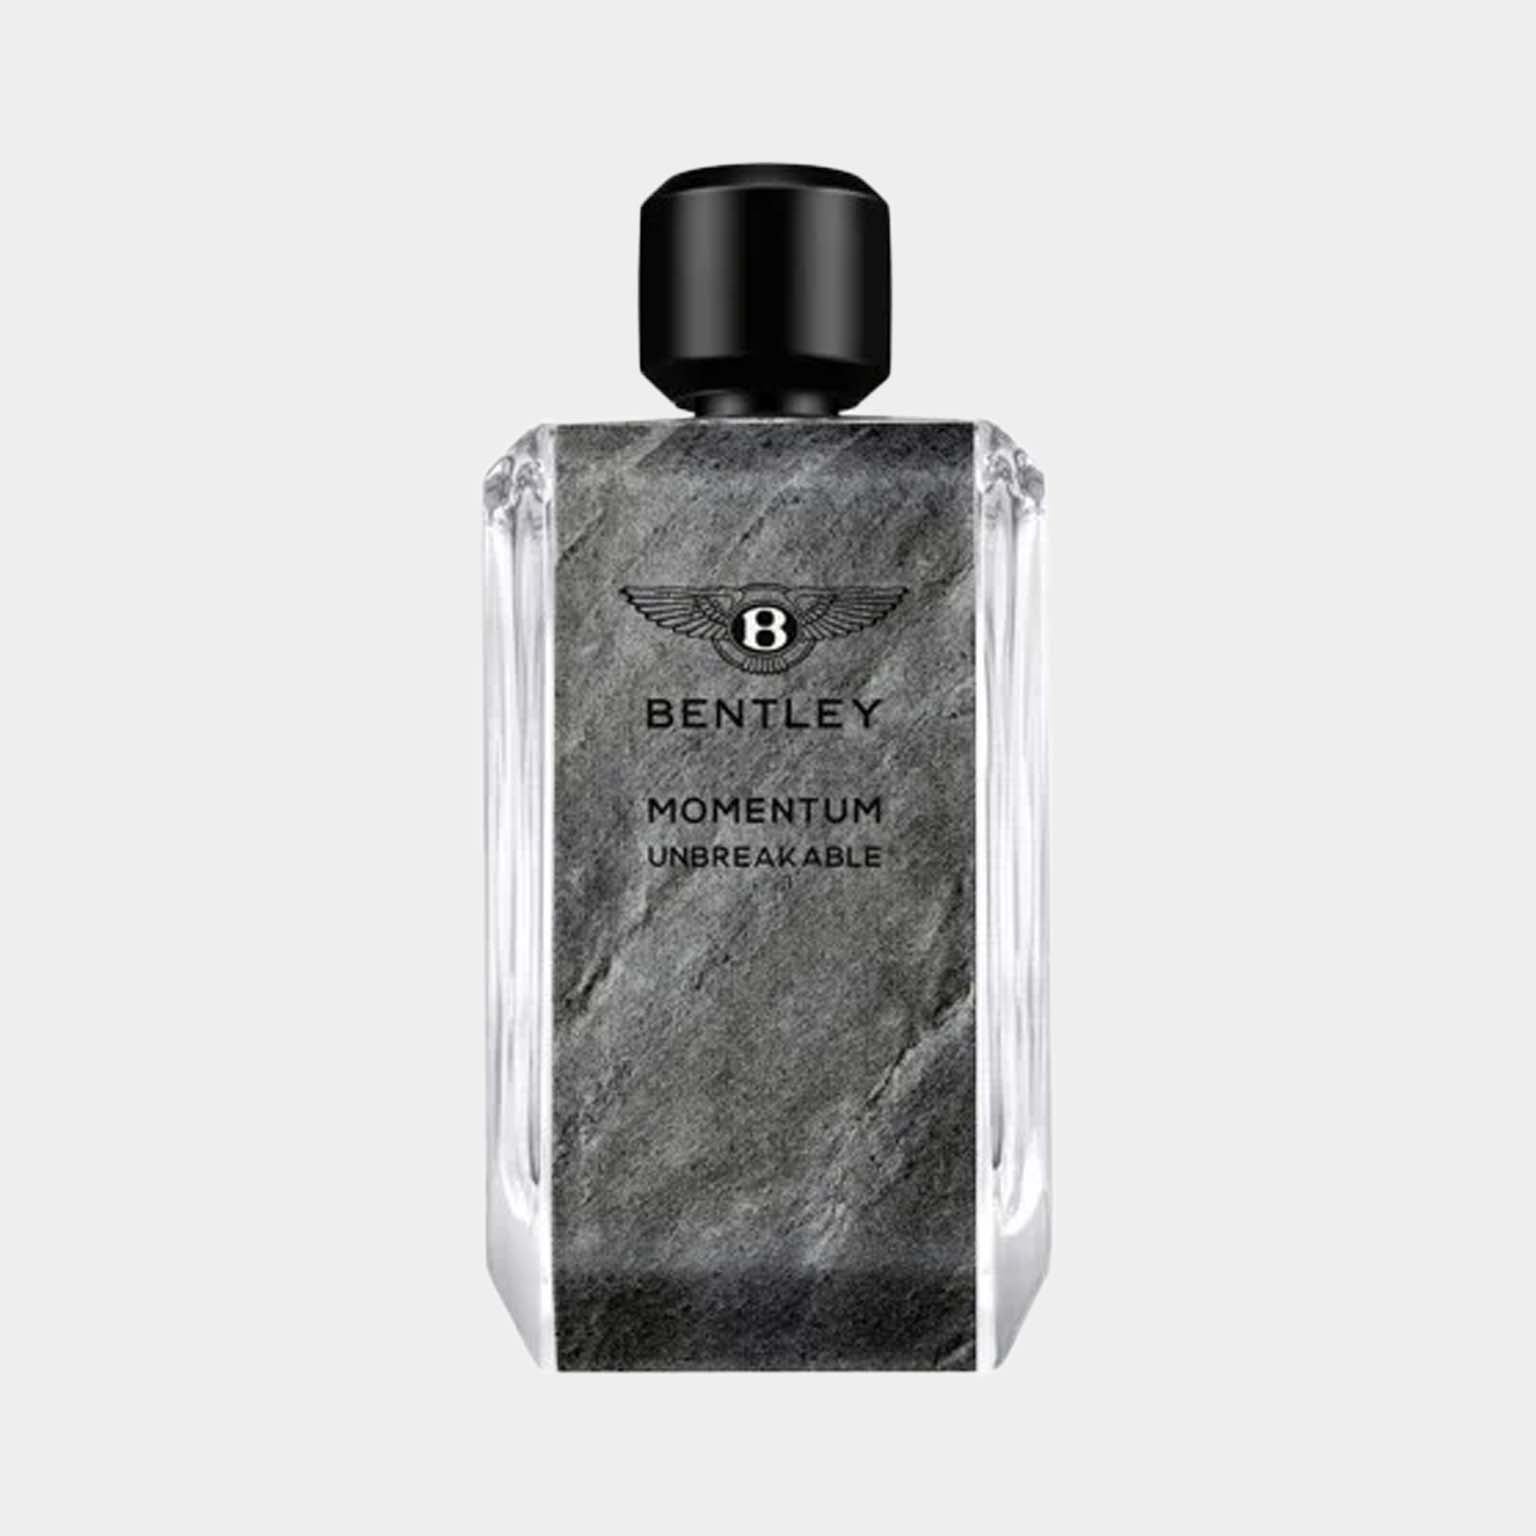 De parfum Bentley Momentum Unbreakable